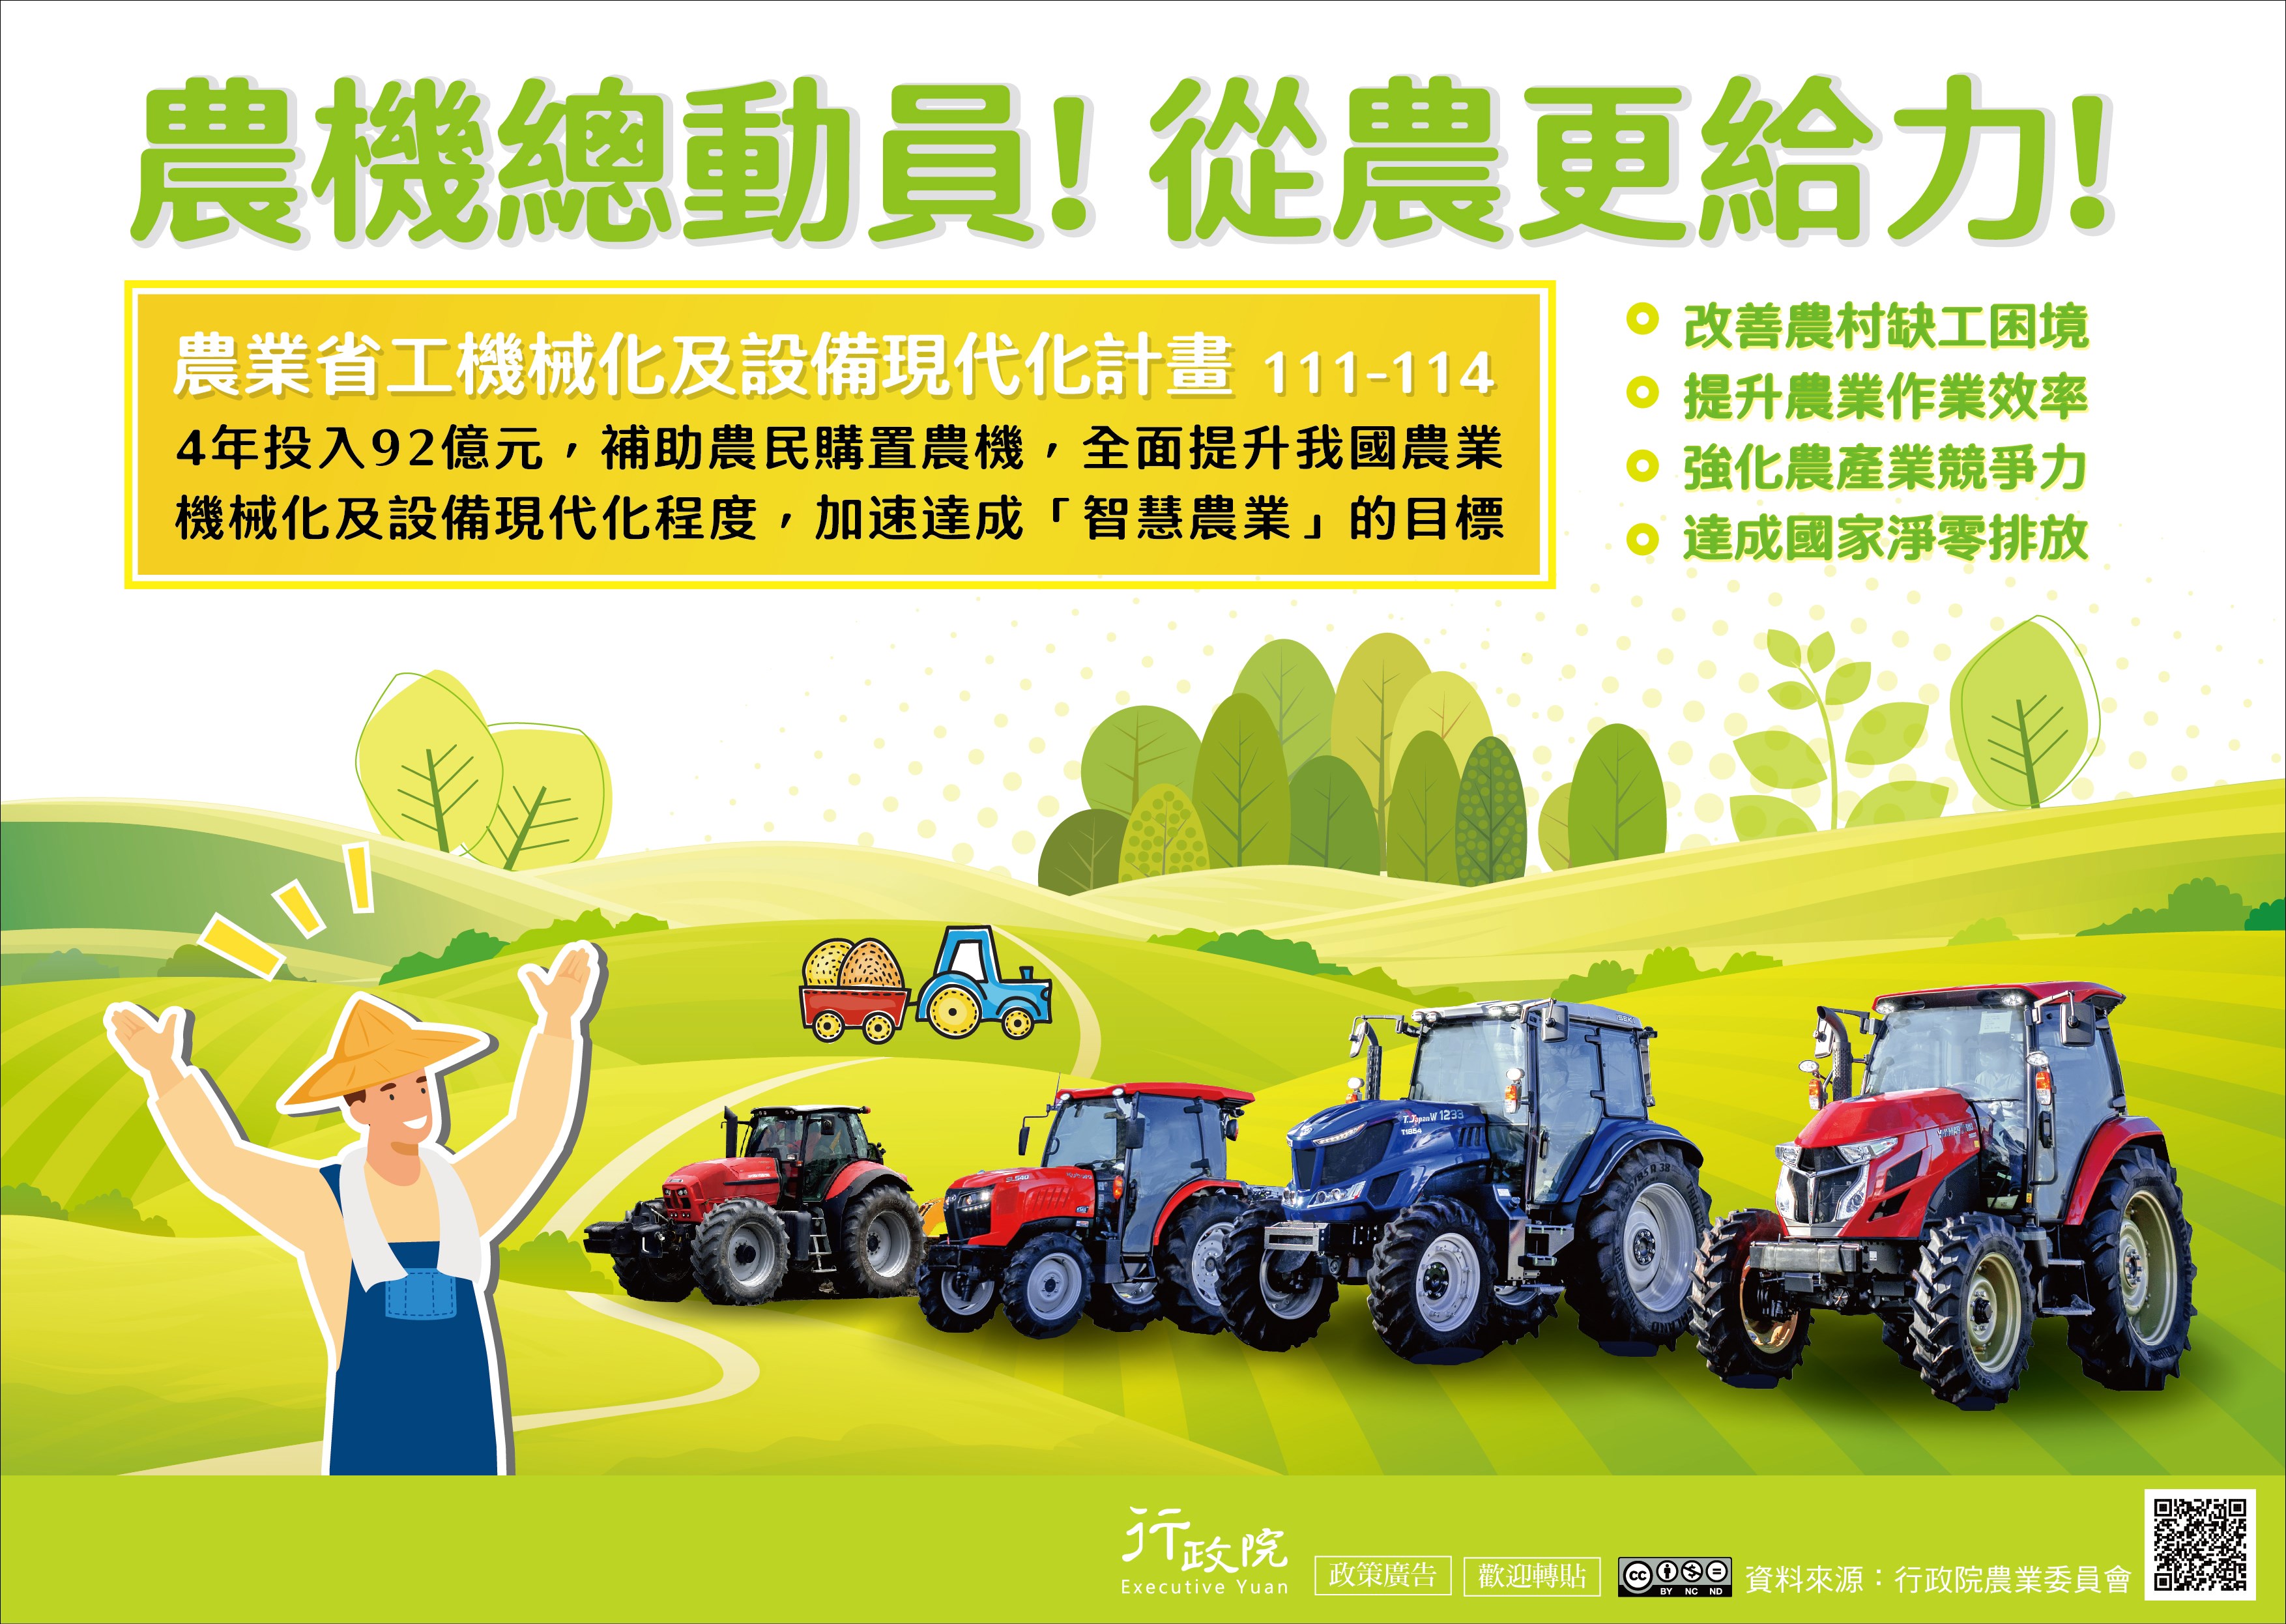 農業省工機械化及設備現代化方案